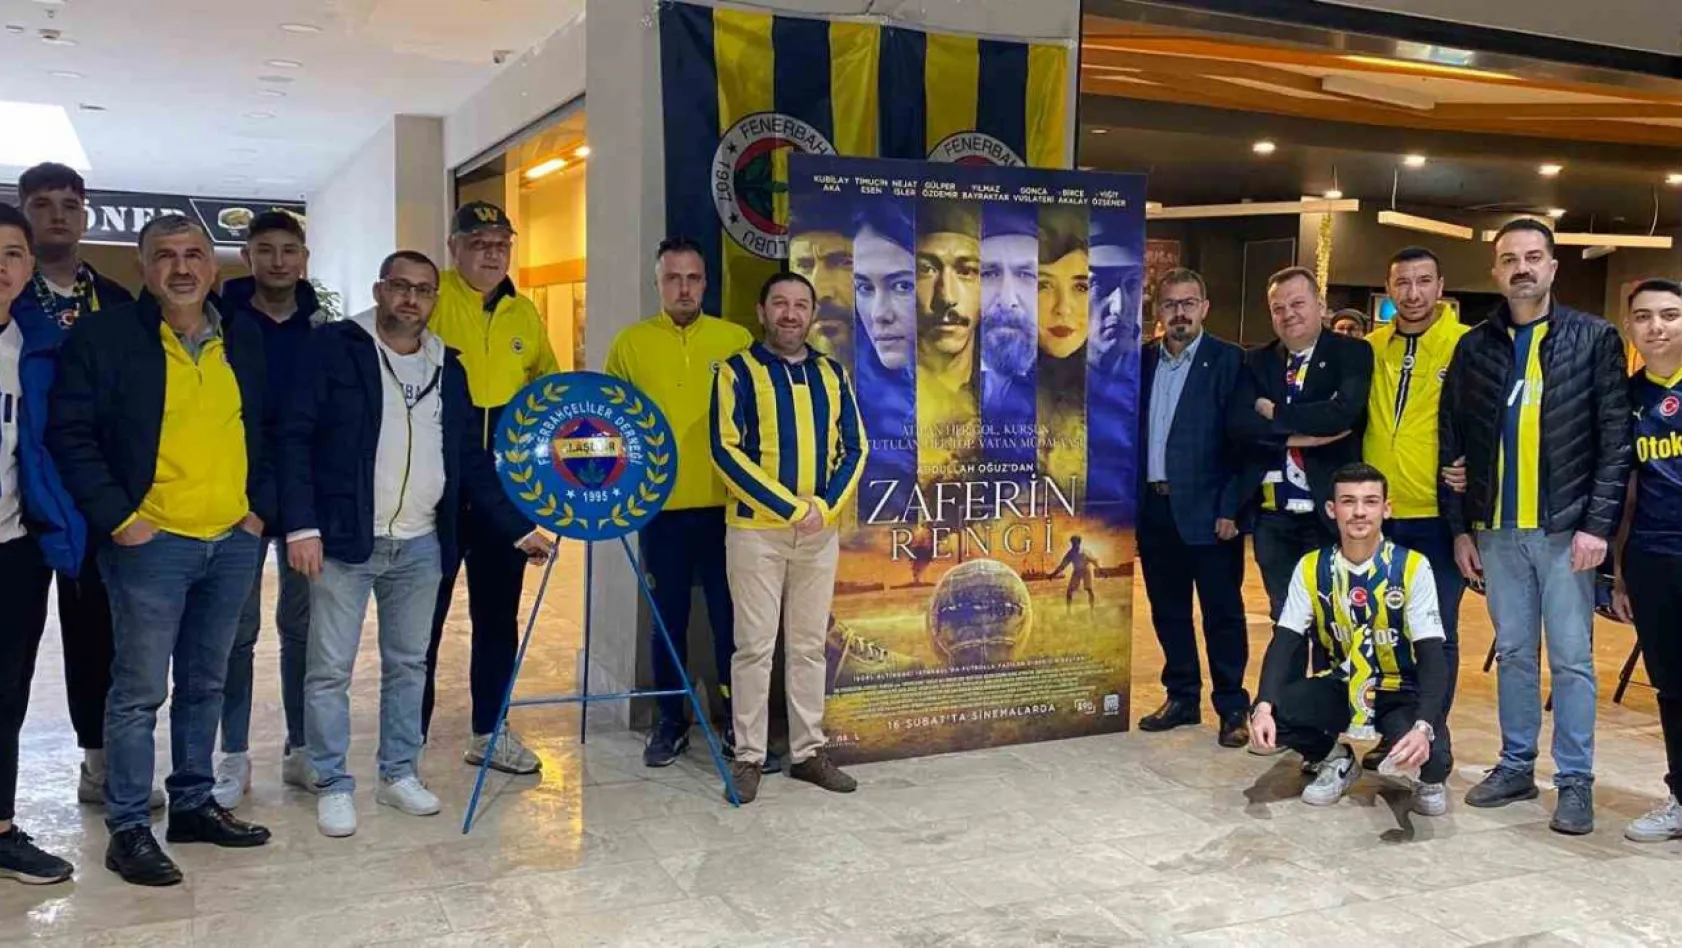 Fenerbahçe taraftarları sinema salonunu doldurdu